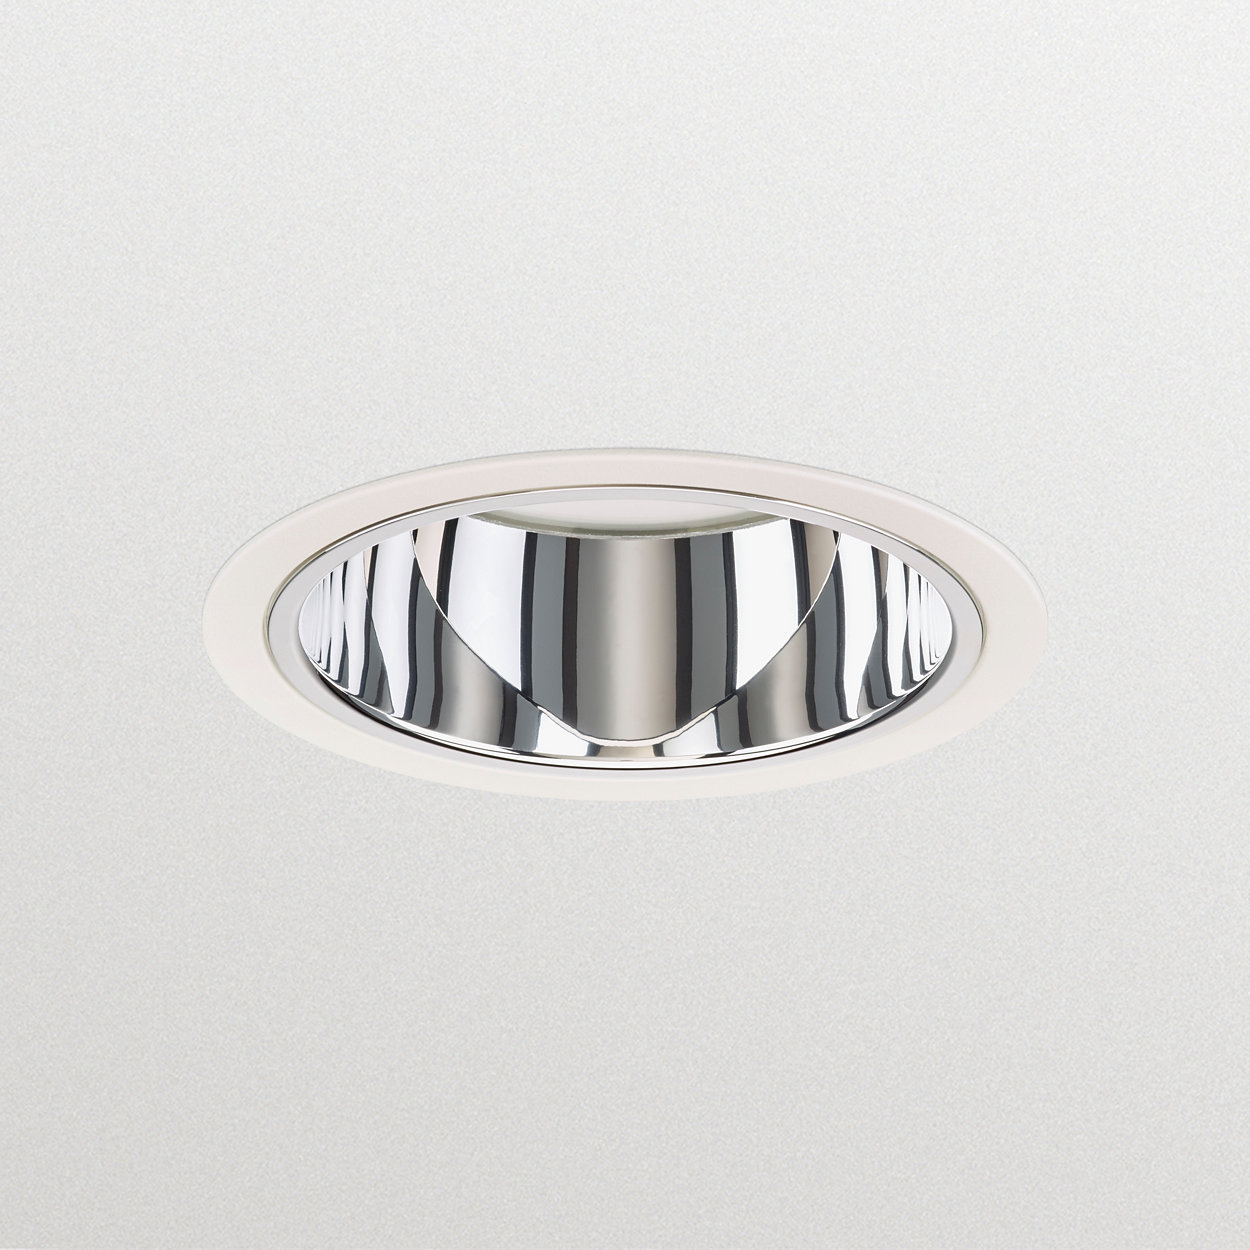 LuxSpace Mini Einbaudownlight - hohe Effizienz, hoher Komfort und elegantes Design